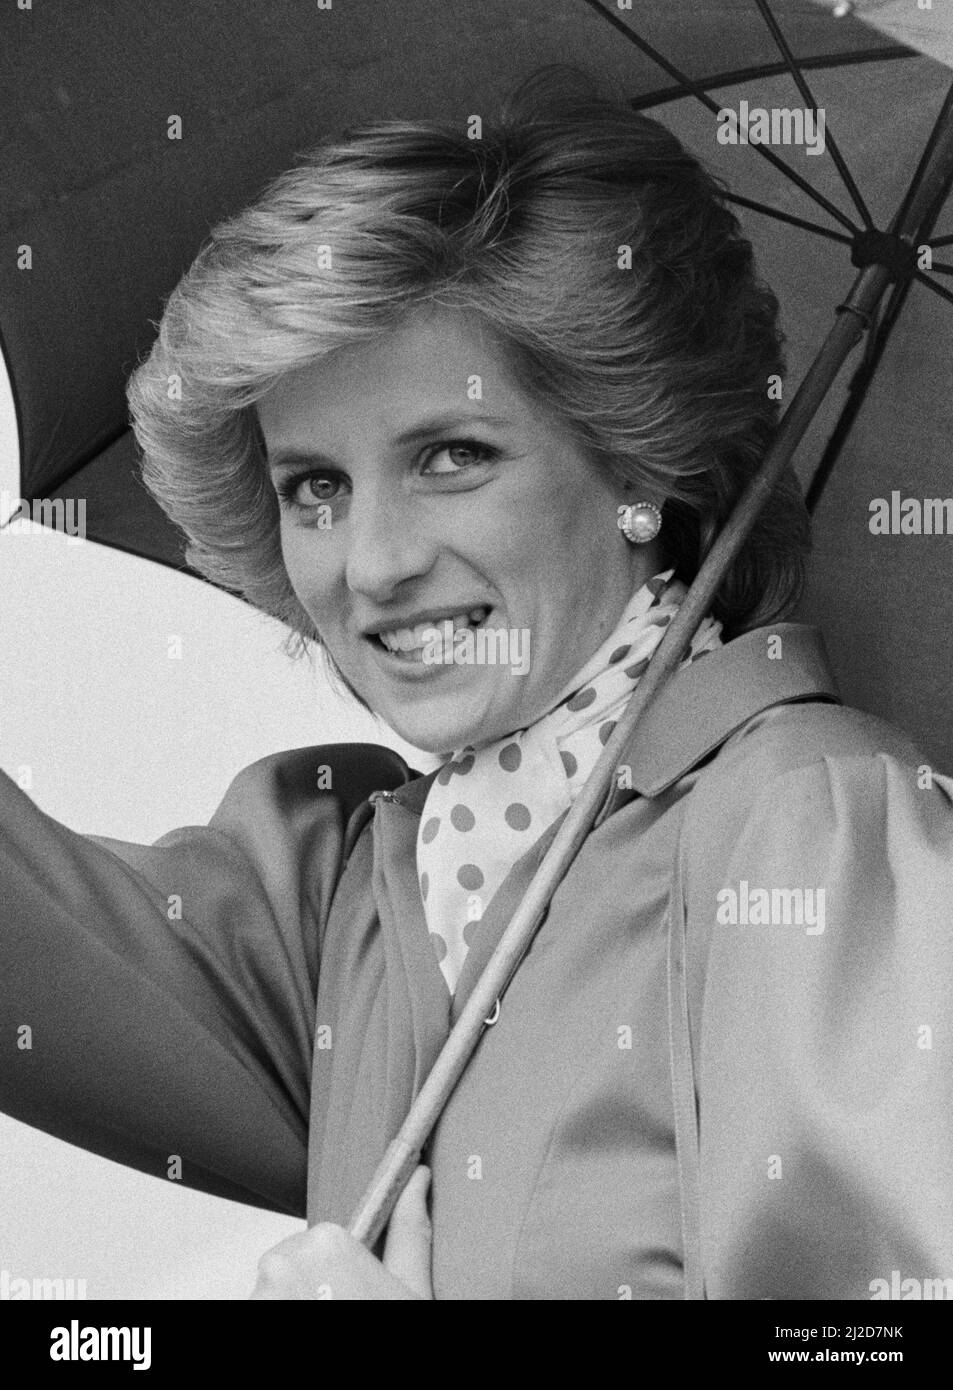 Ihre Königliche Hoheit Prinzessin Diana, die Prinzessin von Wales, besucht die Ipswich Agricultural Show, Ipswich, Suffolk. **DIES IST Ein AUSSCHNITT EINES ANDEREN BILDES AUCH IN DIESEM SET** Bild aufgenommen am 28.. Mai 1986 Stockfoto